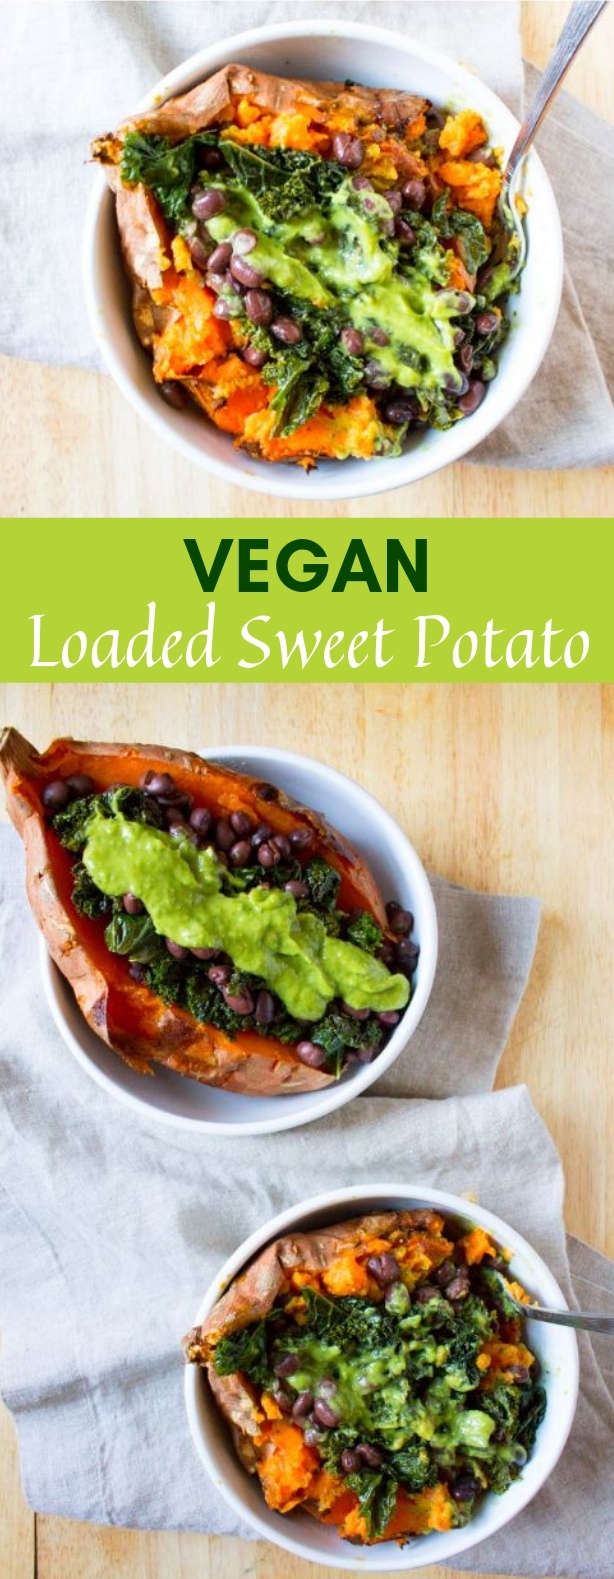 Vegan Loaded Sweet Potato #Vegan #Potato